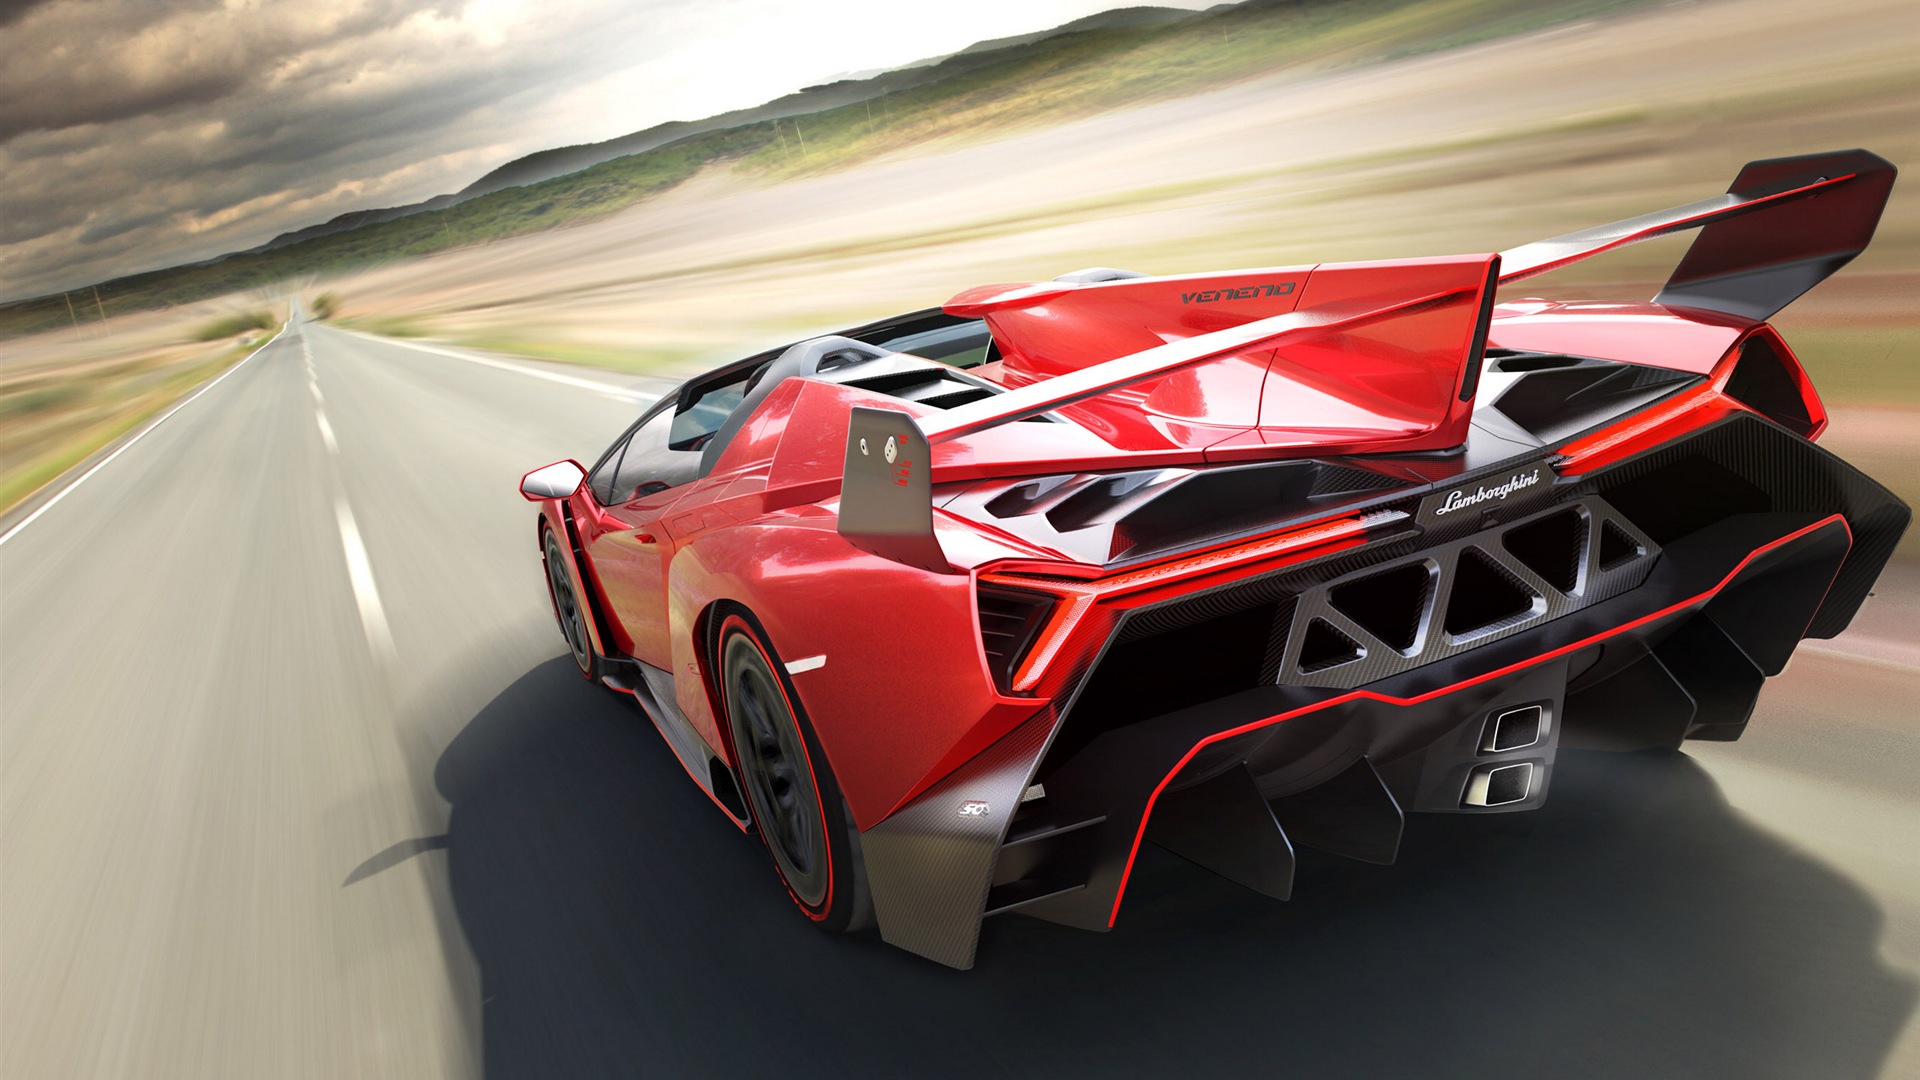 2014 Lamborghini Veneno Roadster red supercar HD wallpapers #2 - 1920x1080